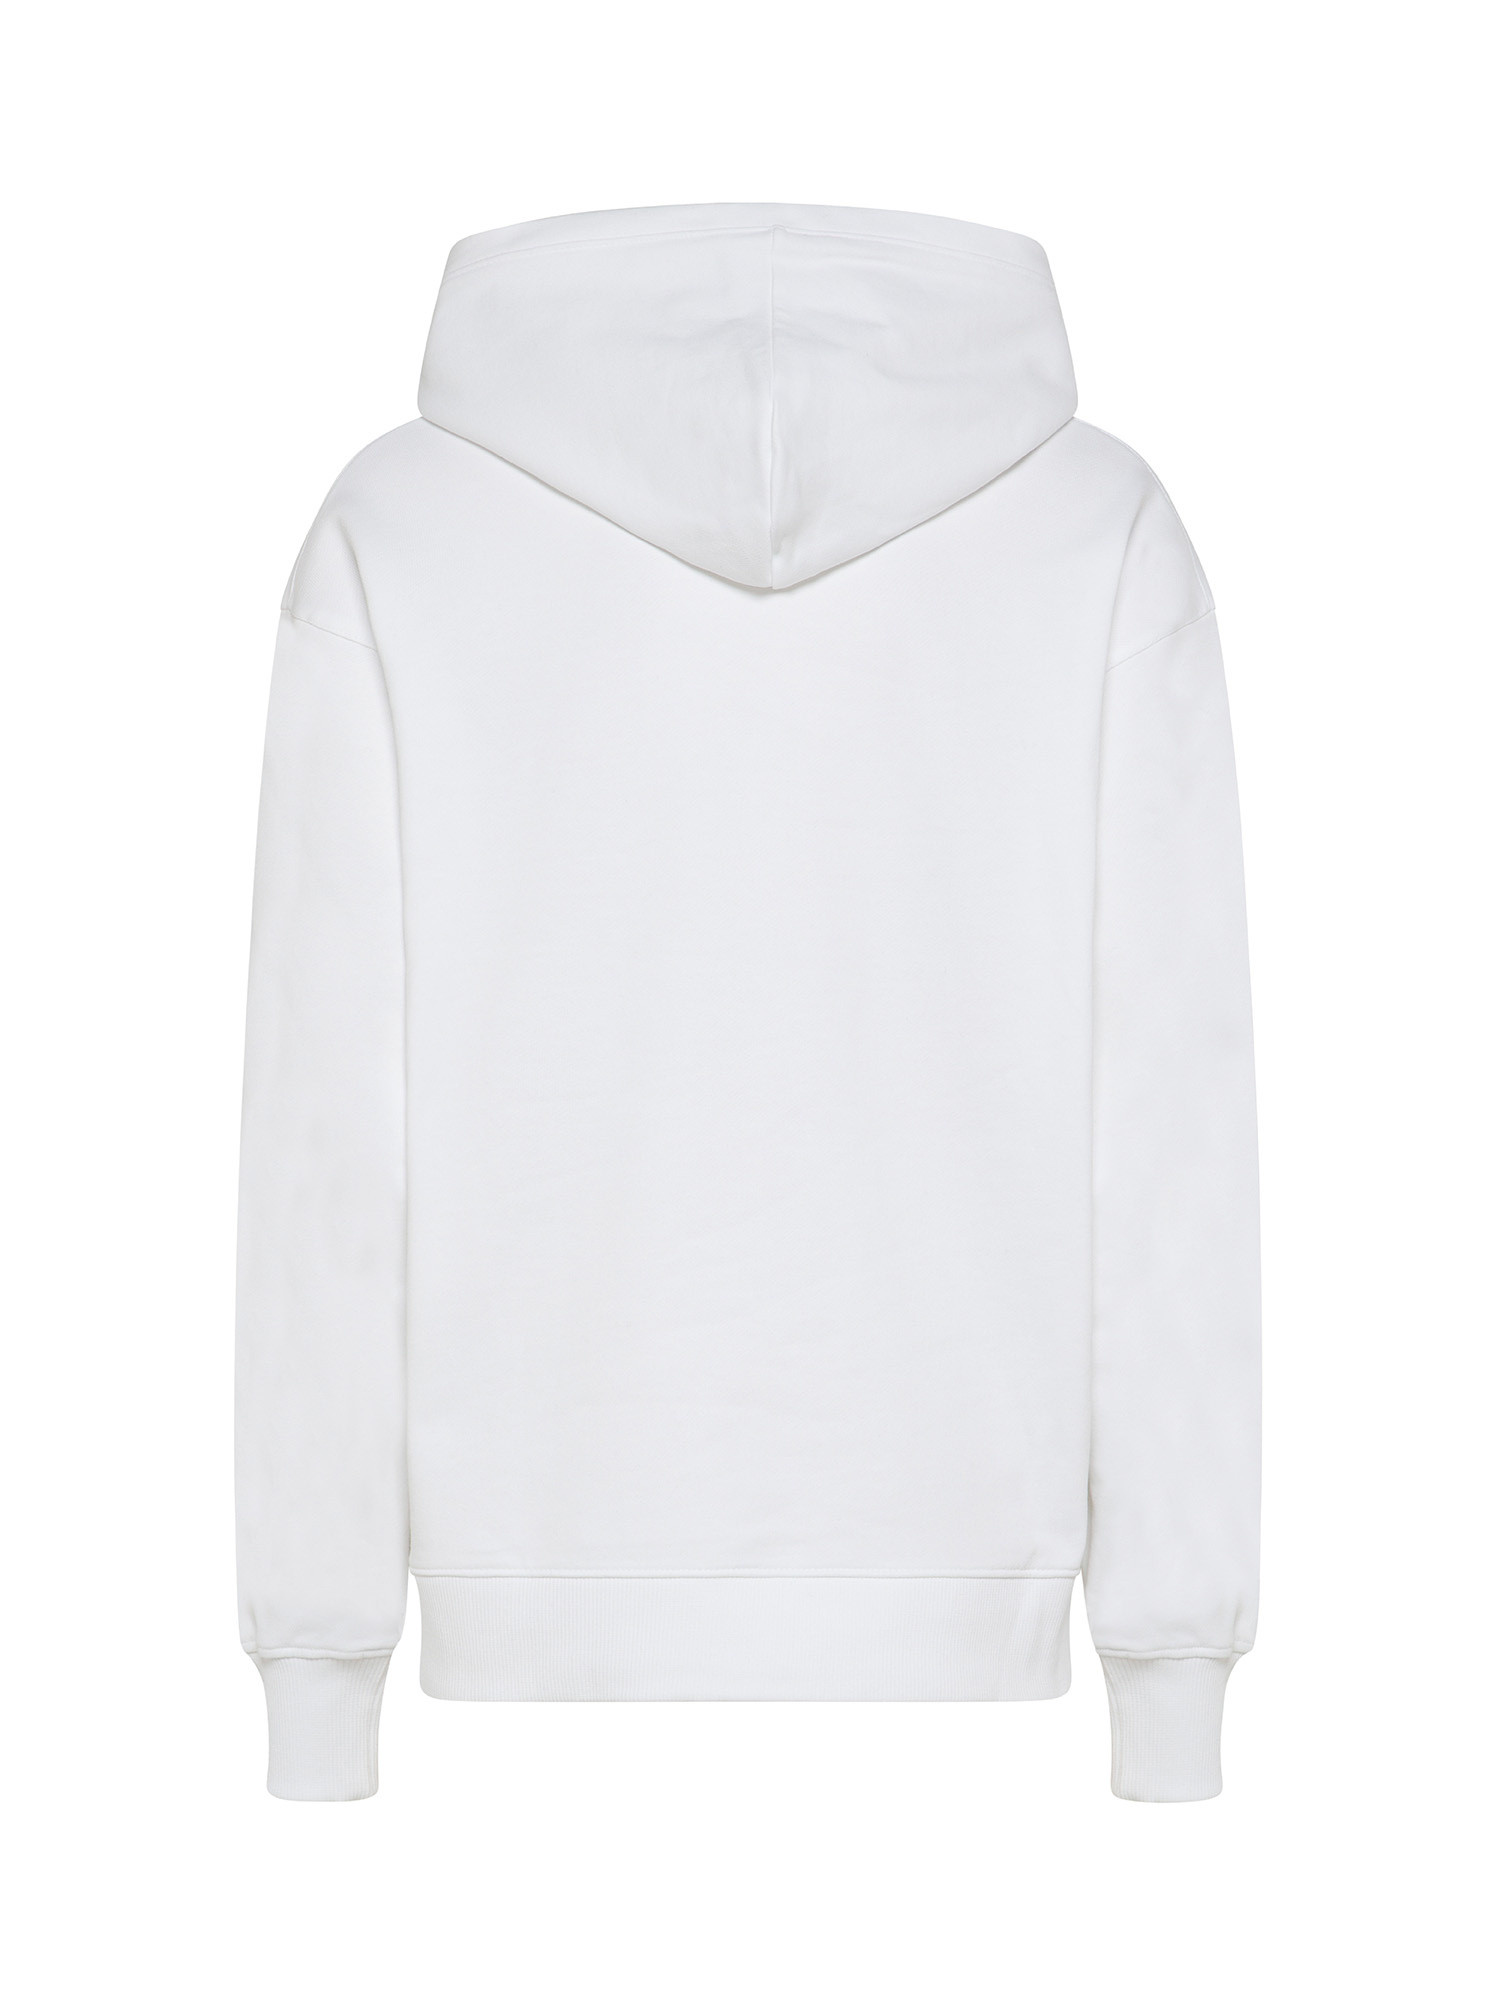 Oversized hooded sweatshirt, White, large image number 1